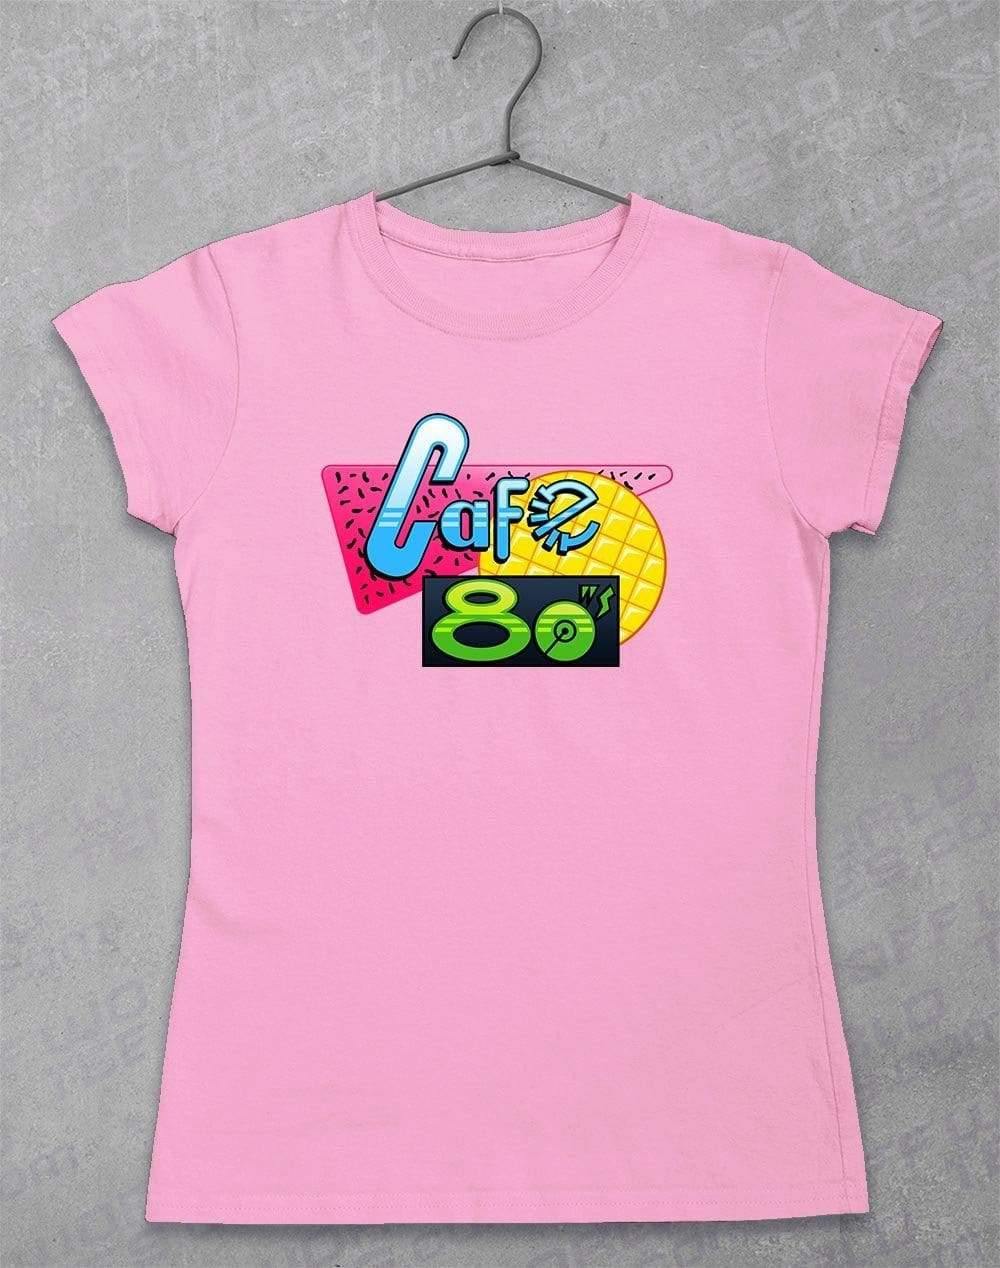 Cafe 80's - Women's T-Shirt 8-10 / Light Pink  - Off World Tees